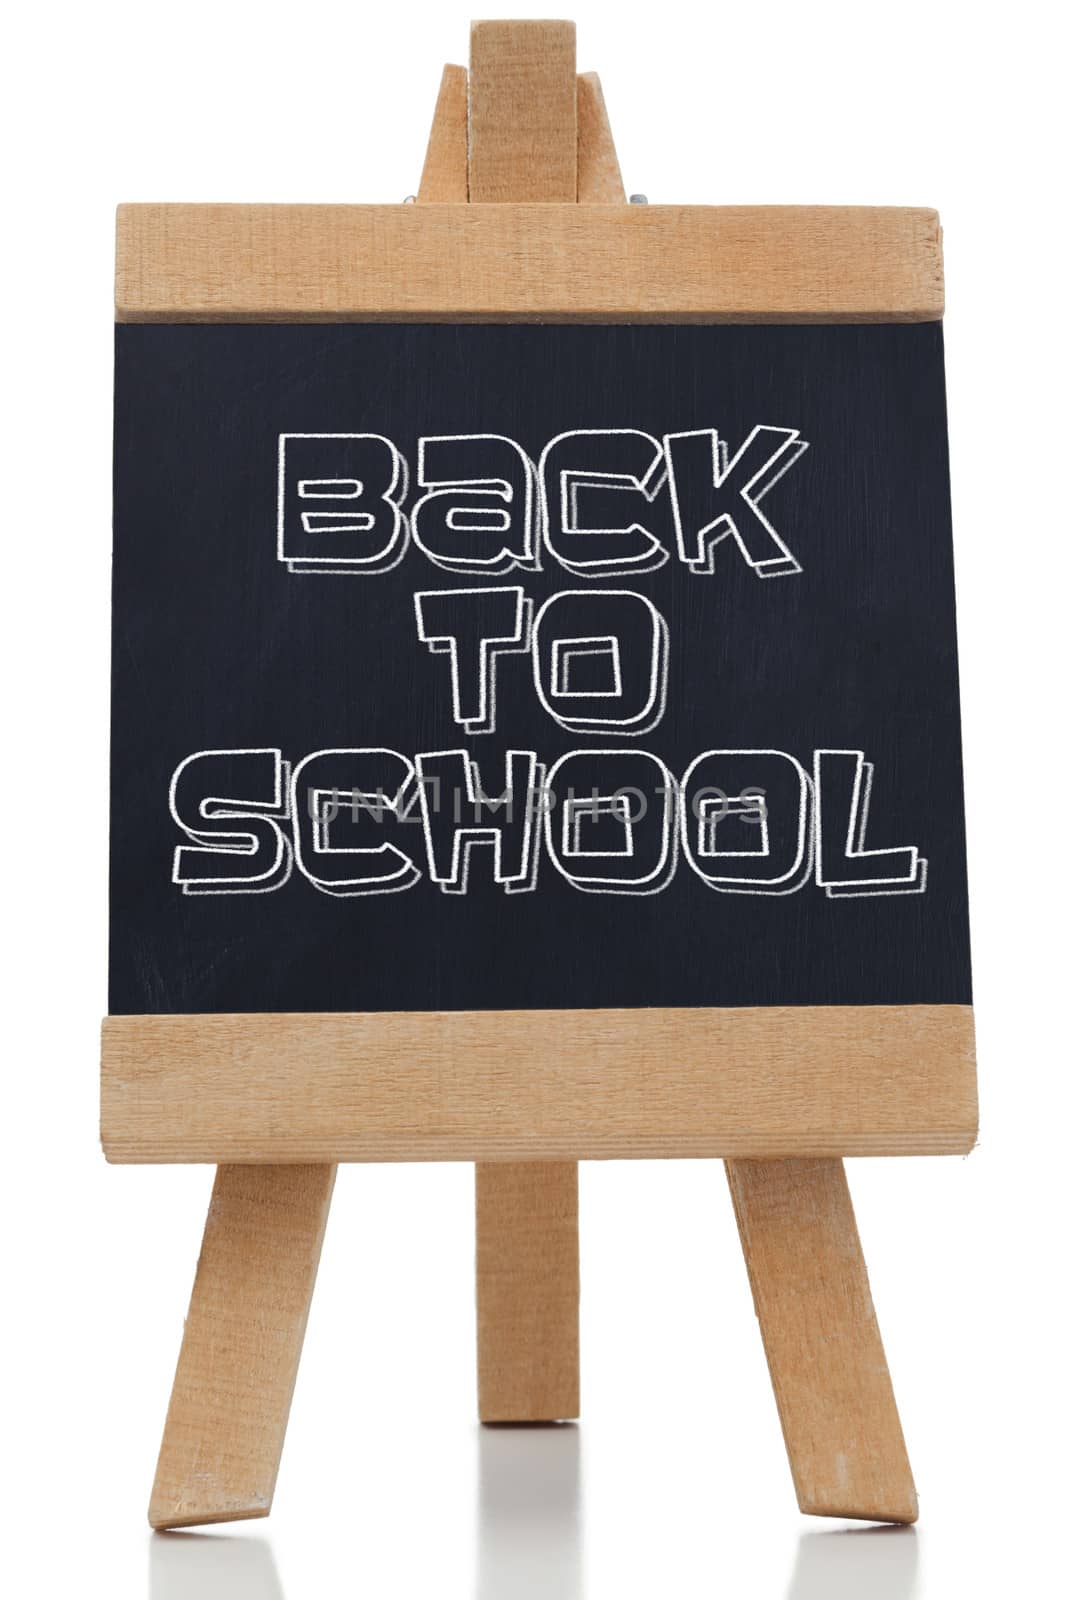 Back to school written in black on chalkboard by Wavebreakmedia